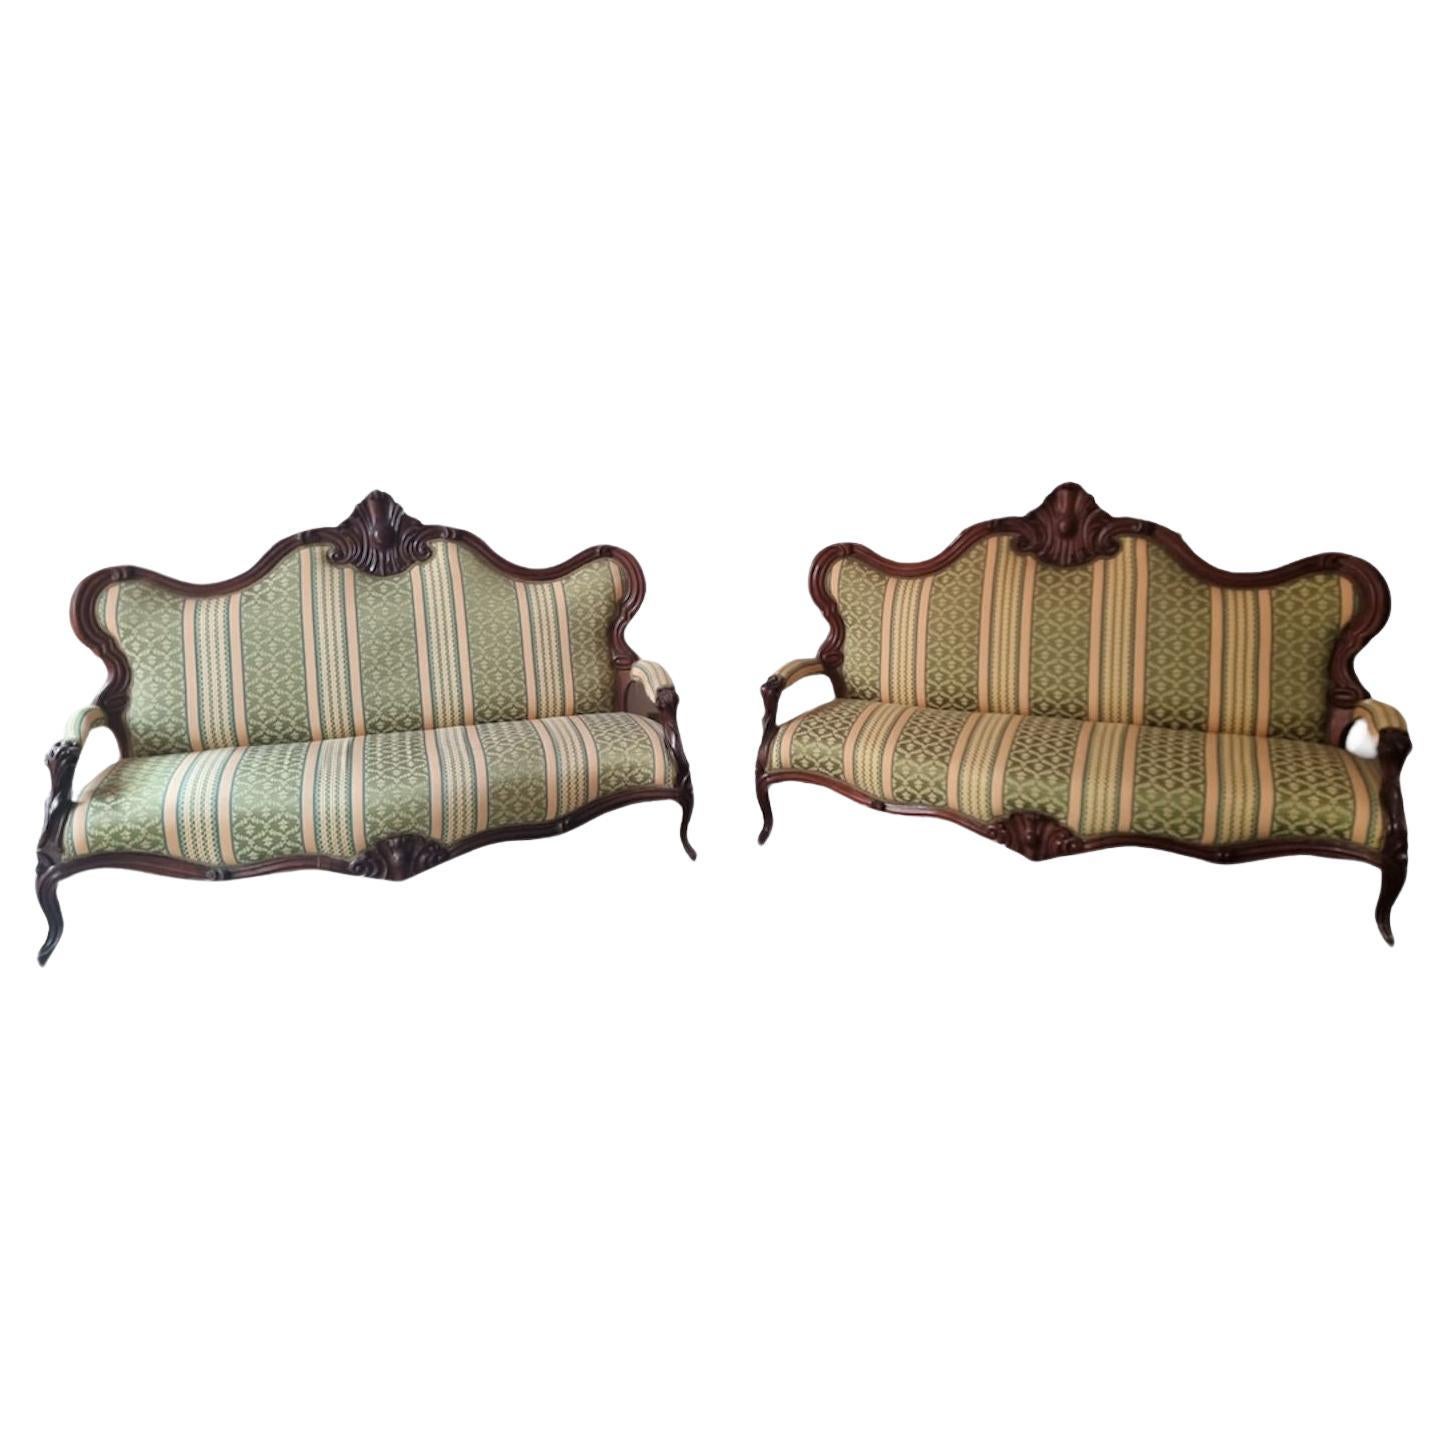 19th century pair of walnut sofas